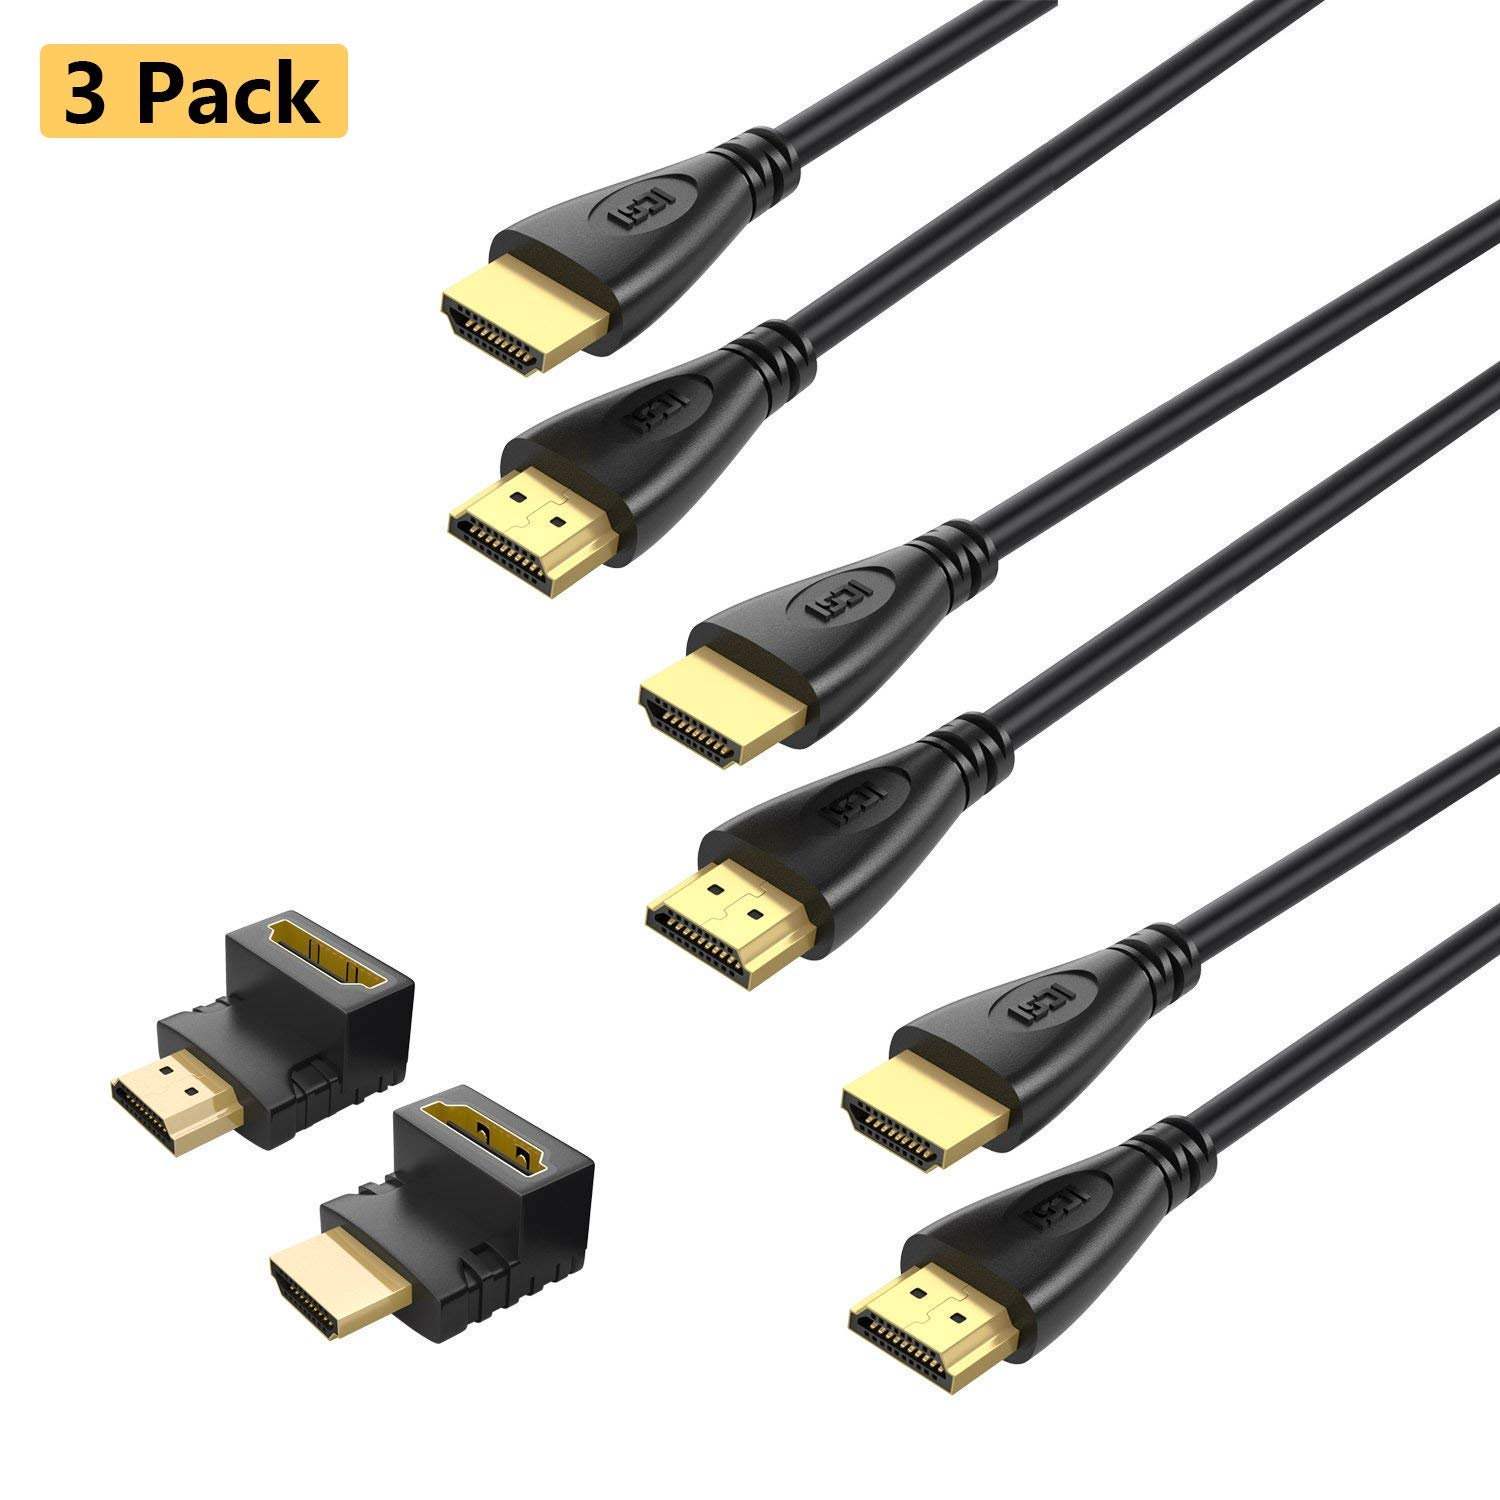 3 cables HDMI + 2 codos solo 9€